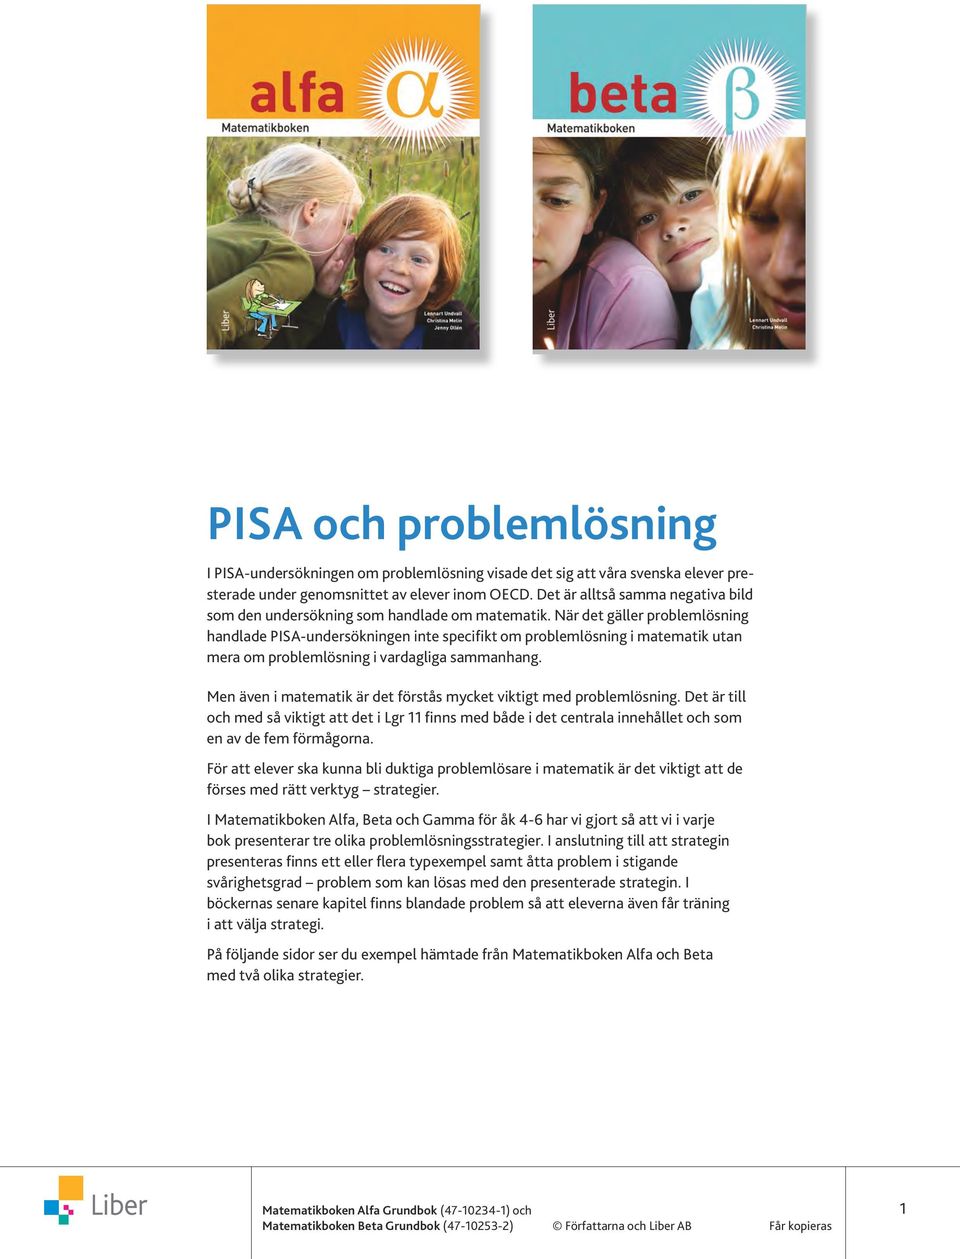 När det gäller problemlösning handlade PISA-undersökningen inte specifikt om problemlösning i matematik utan mera om problemlösning i vardagliga sammanhang.